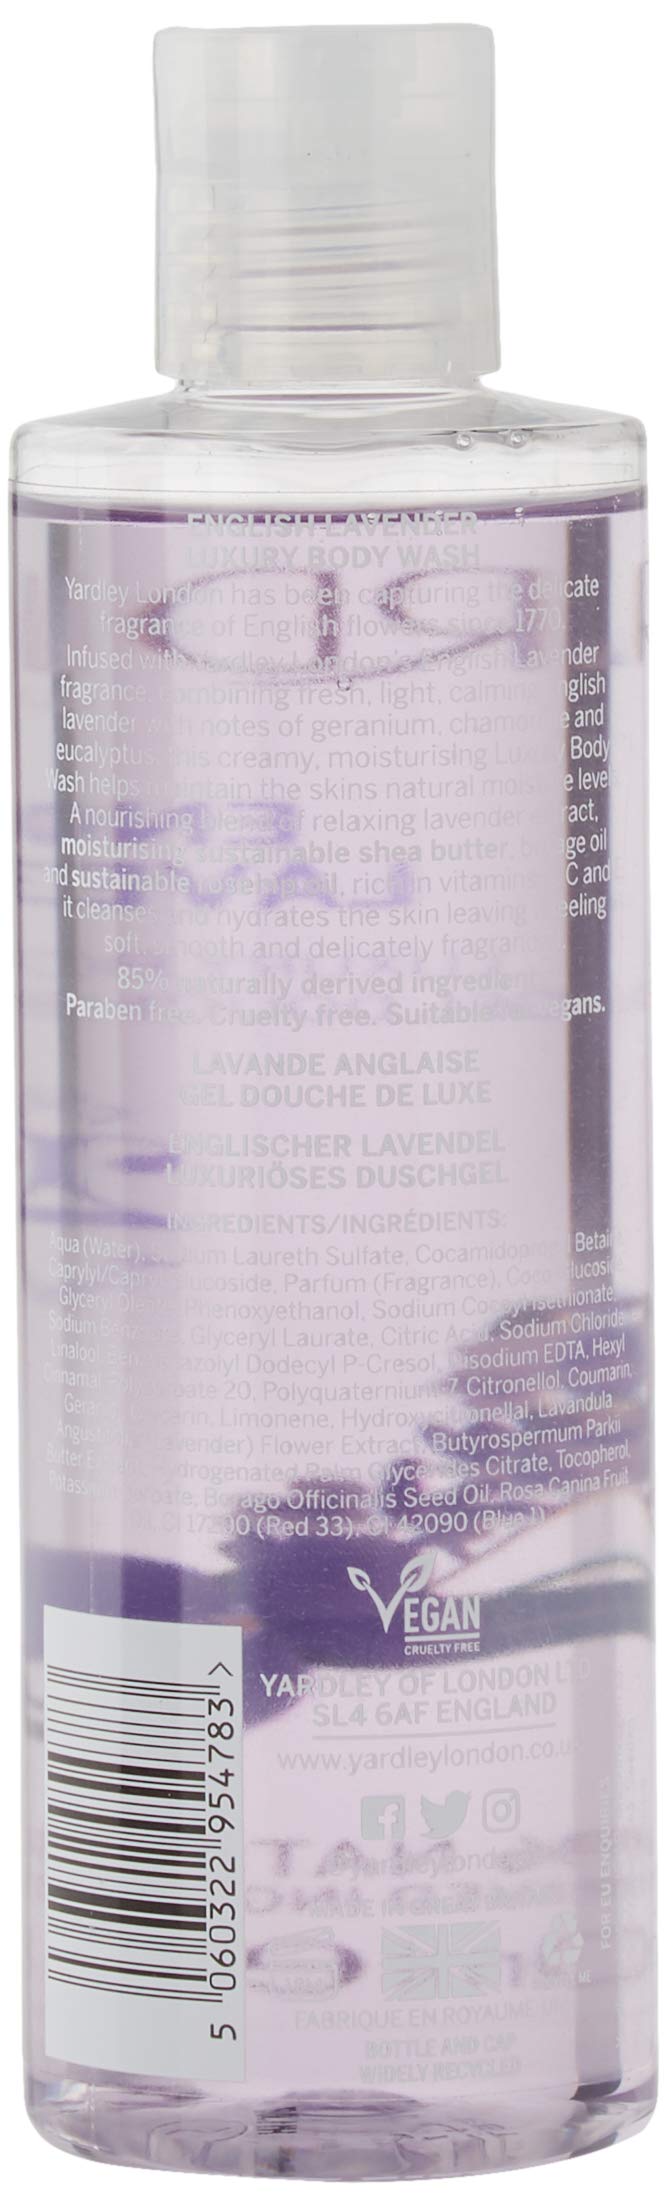 Yardley Of London Yardley English Lavender Luxury Body Wash 8.4 Oz/ 250 Ml for Women By Yardley Of London, 12 Fl Oz